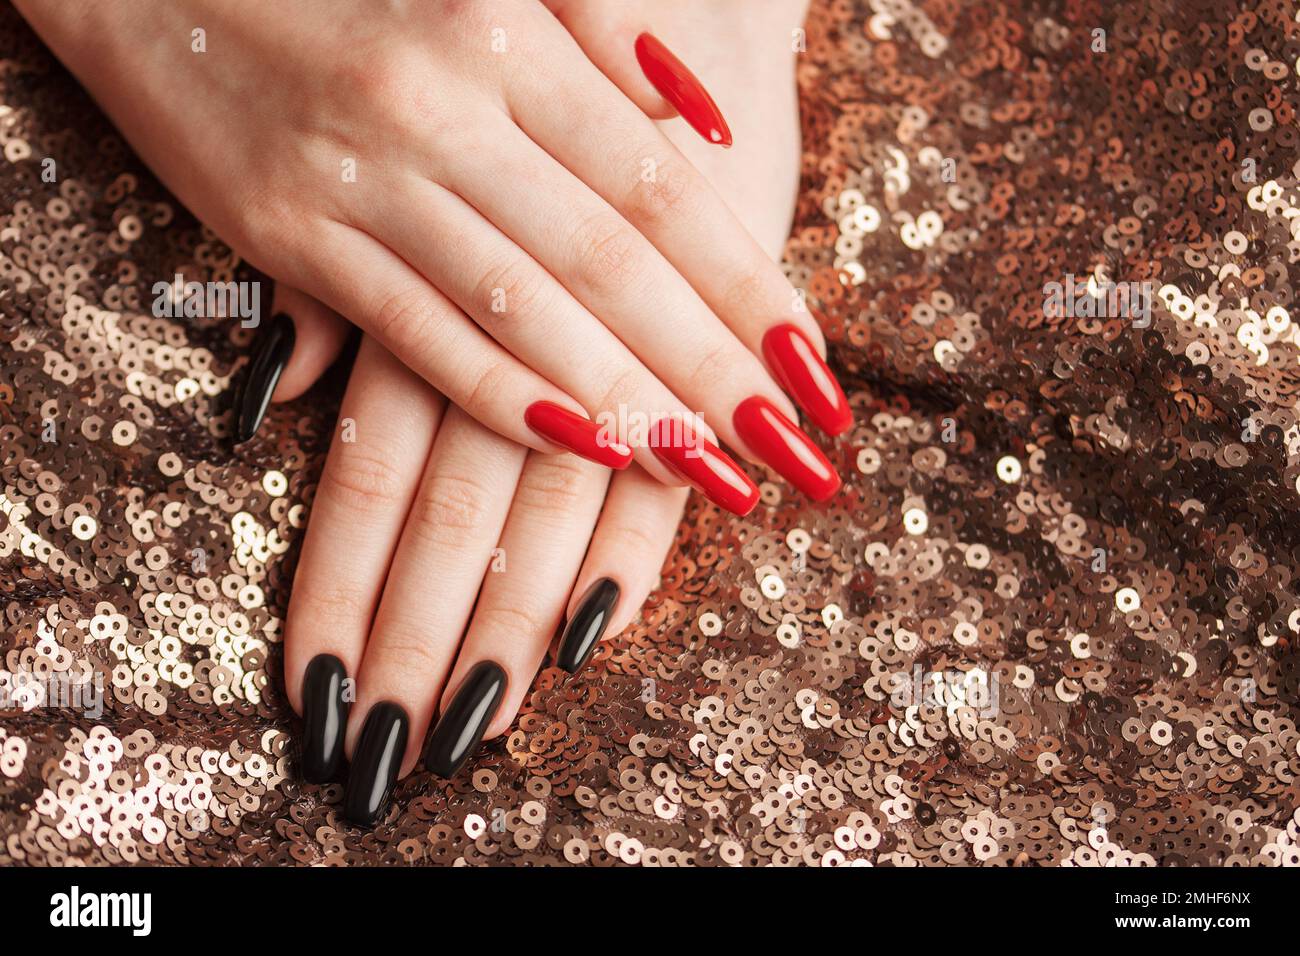 Mani di giovane ragazza con manicure rossa e nera sulle unghie su sfondo paillettes Foto Stock